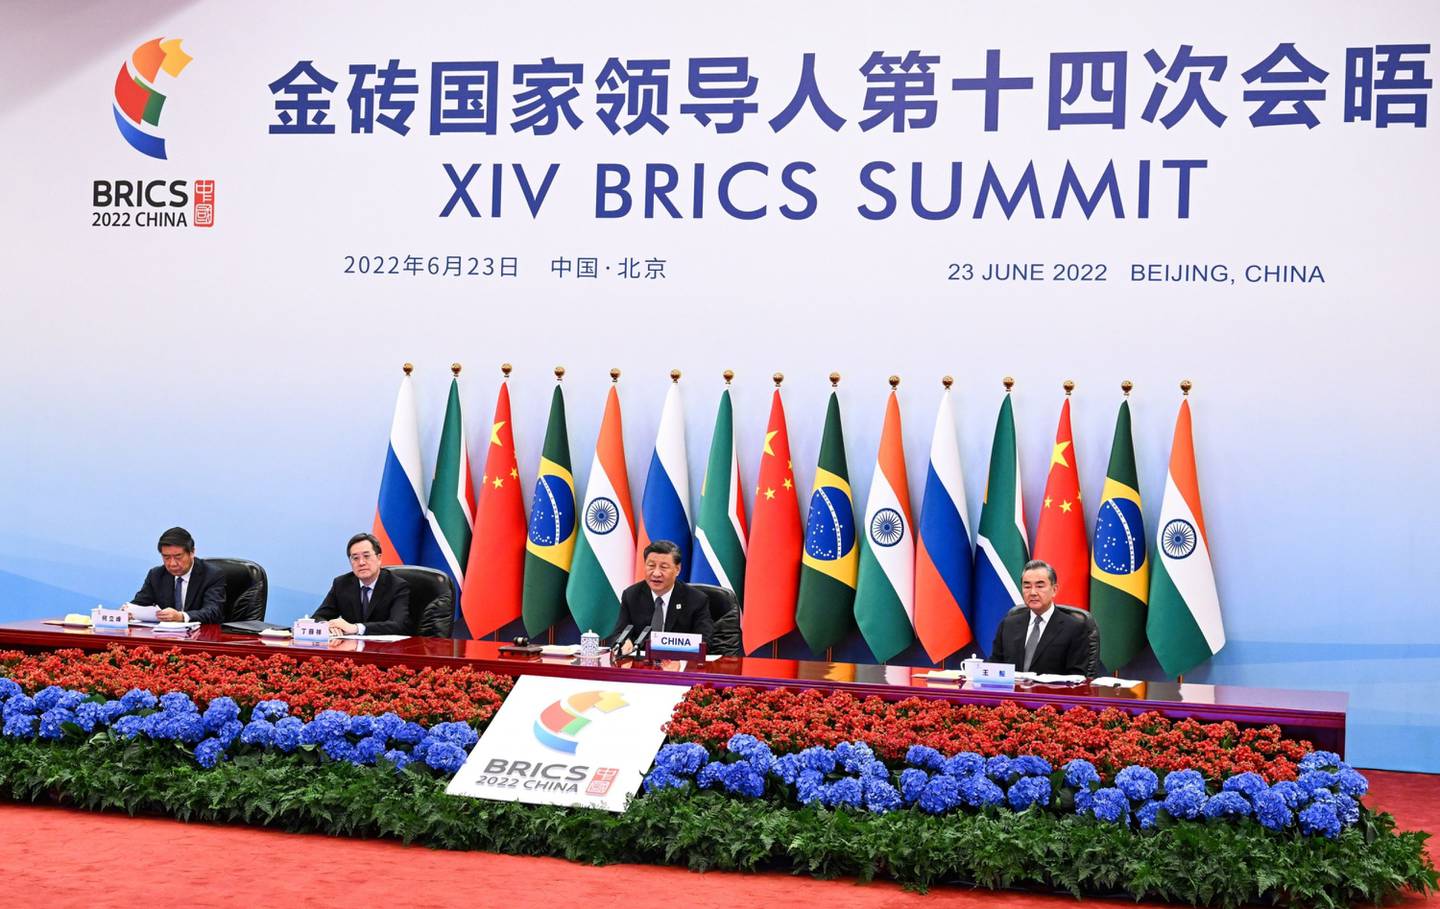 El Presidente Xi Jinping celebra la Cumbre de los BRICS por videoconferencia en Pekín, China, en 2022.